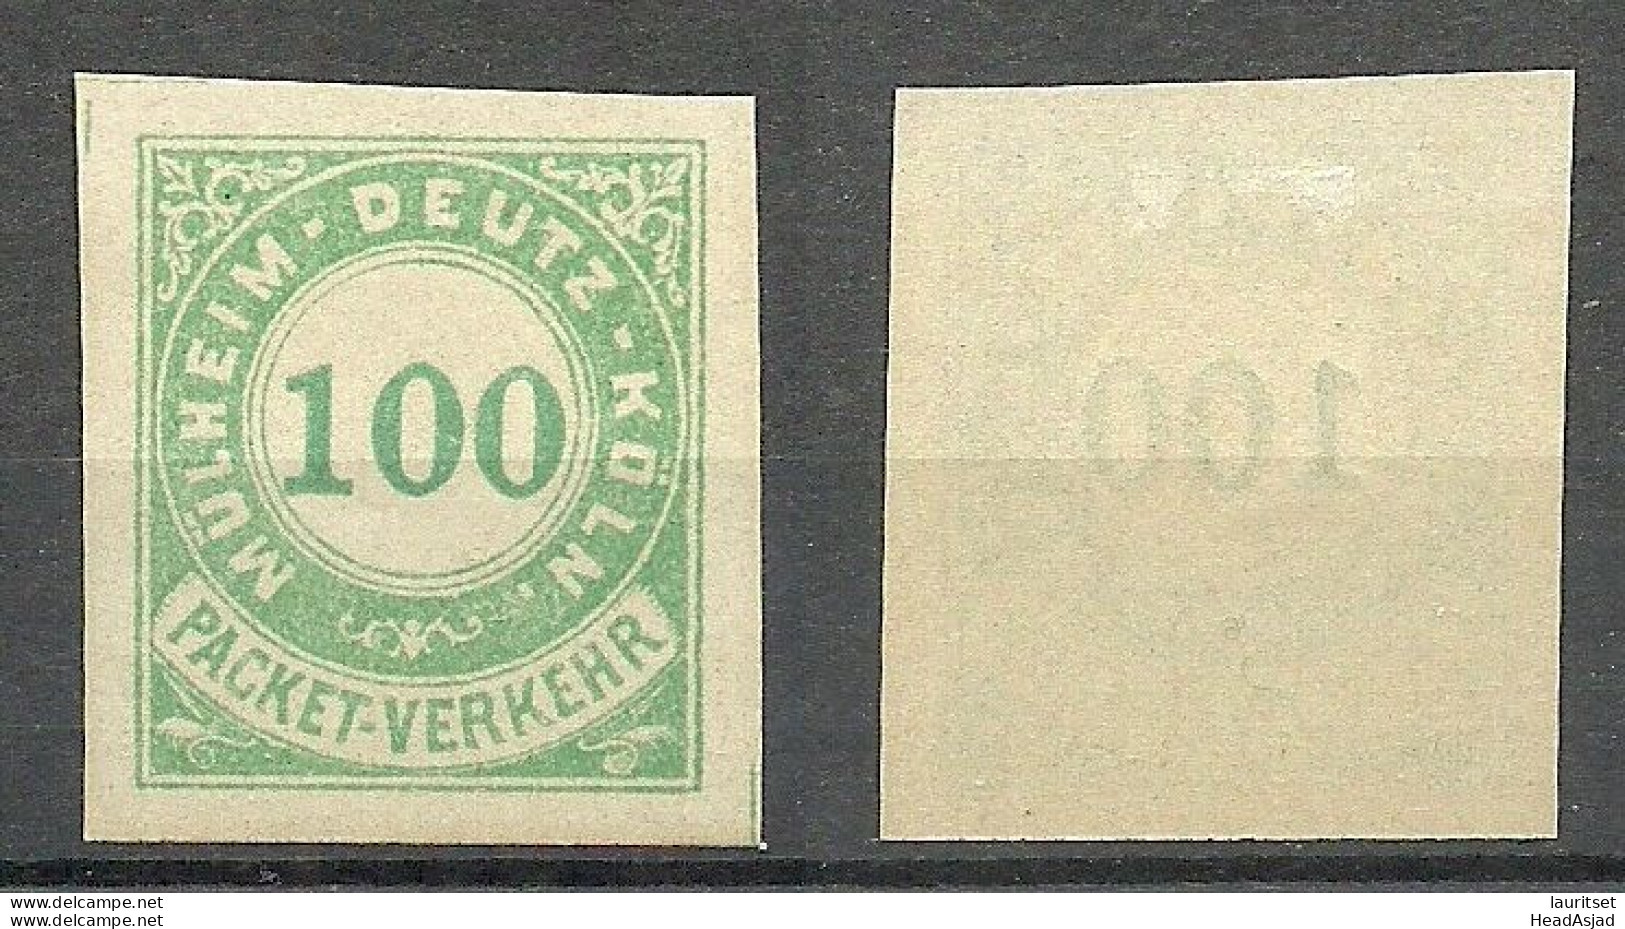 Germany Deutschland Ca. 1885 MüLHEIM-DEUTZ-KÖLN Privater Stadtpost Local City Post Paket-Verkehr 100 Pf. * - Private & Local Mails